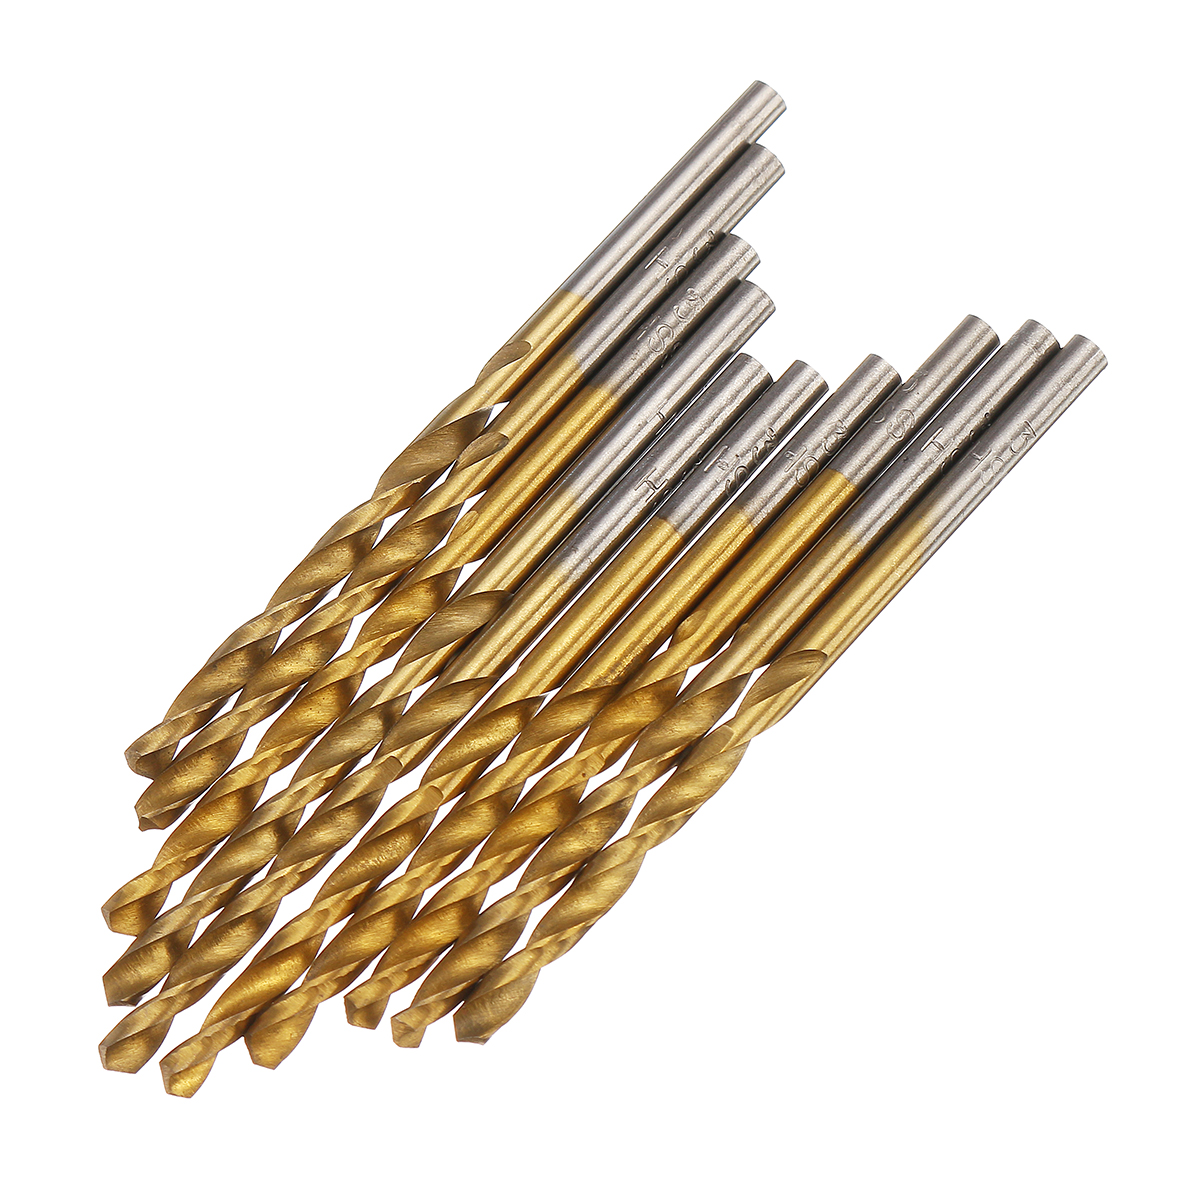 50pcs-Titanium-Coated-High-Speed-Steel-Twist-Drill-Bit1152253mm-Twist-Drill-BitWoodworking-1633522-8